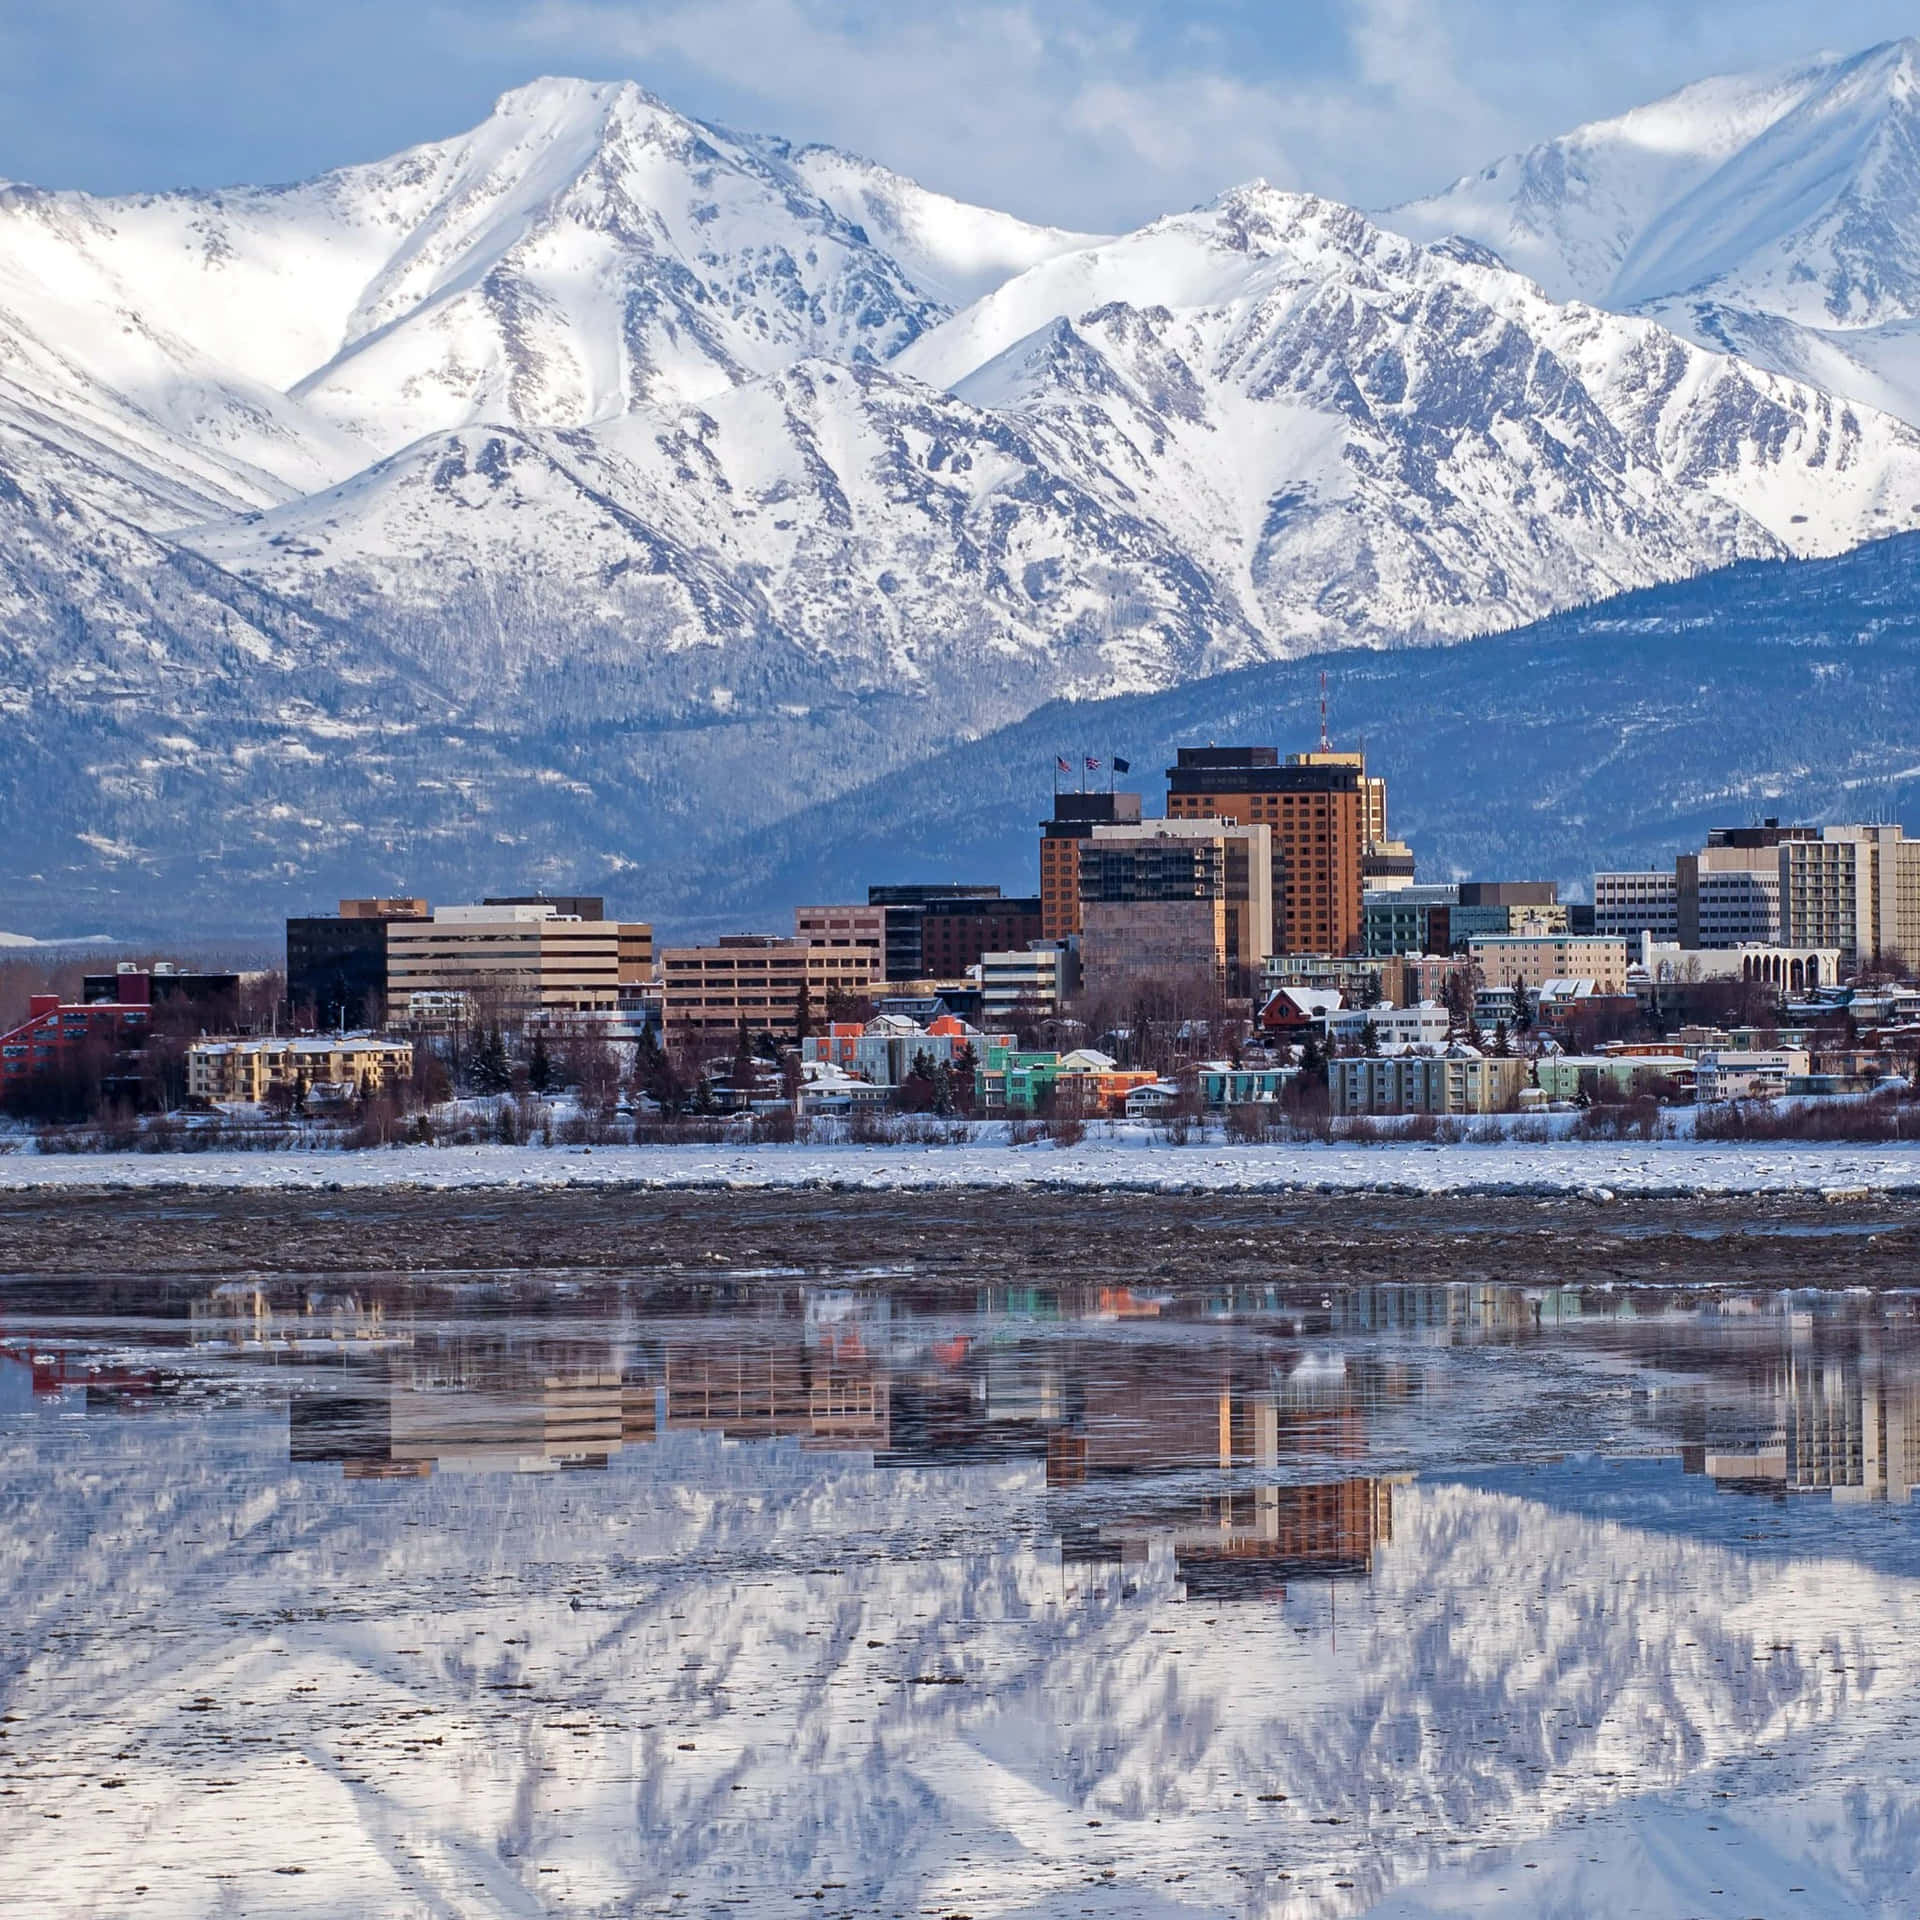 Imagende La Ciudad De Anchorage, Alaska, Y Las Montañas Nevadas.